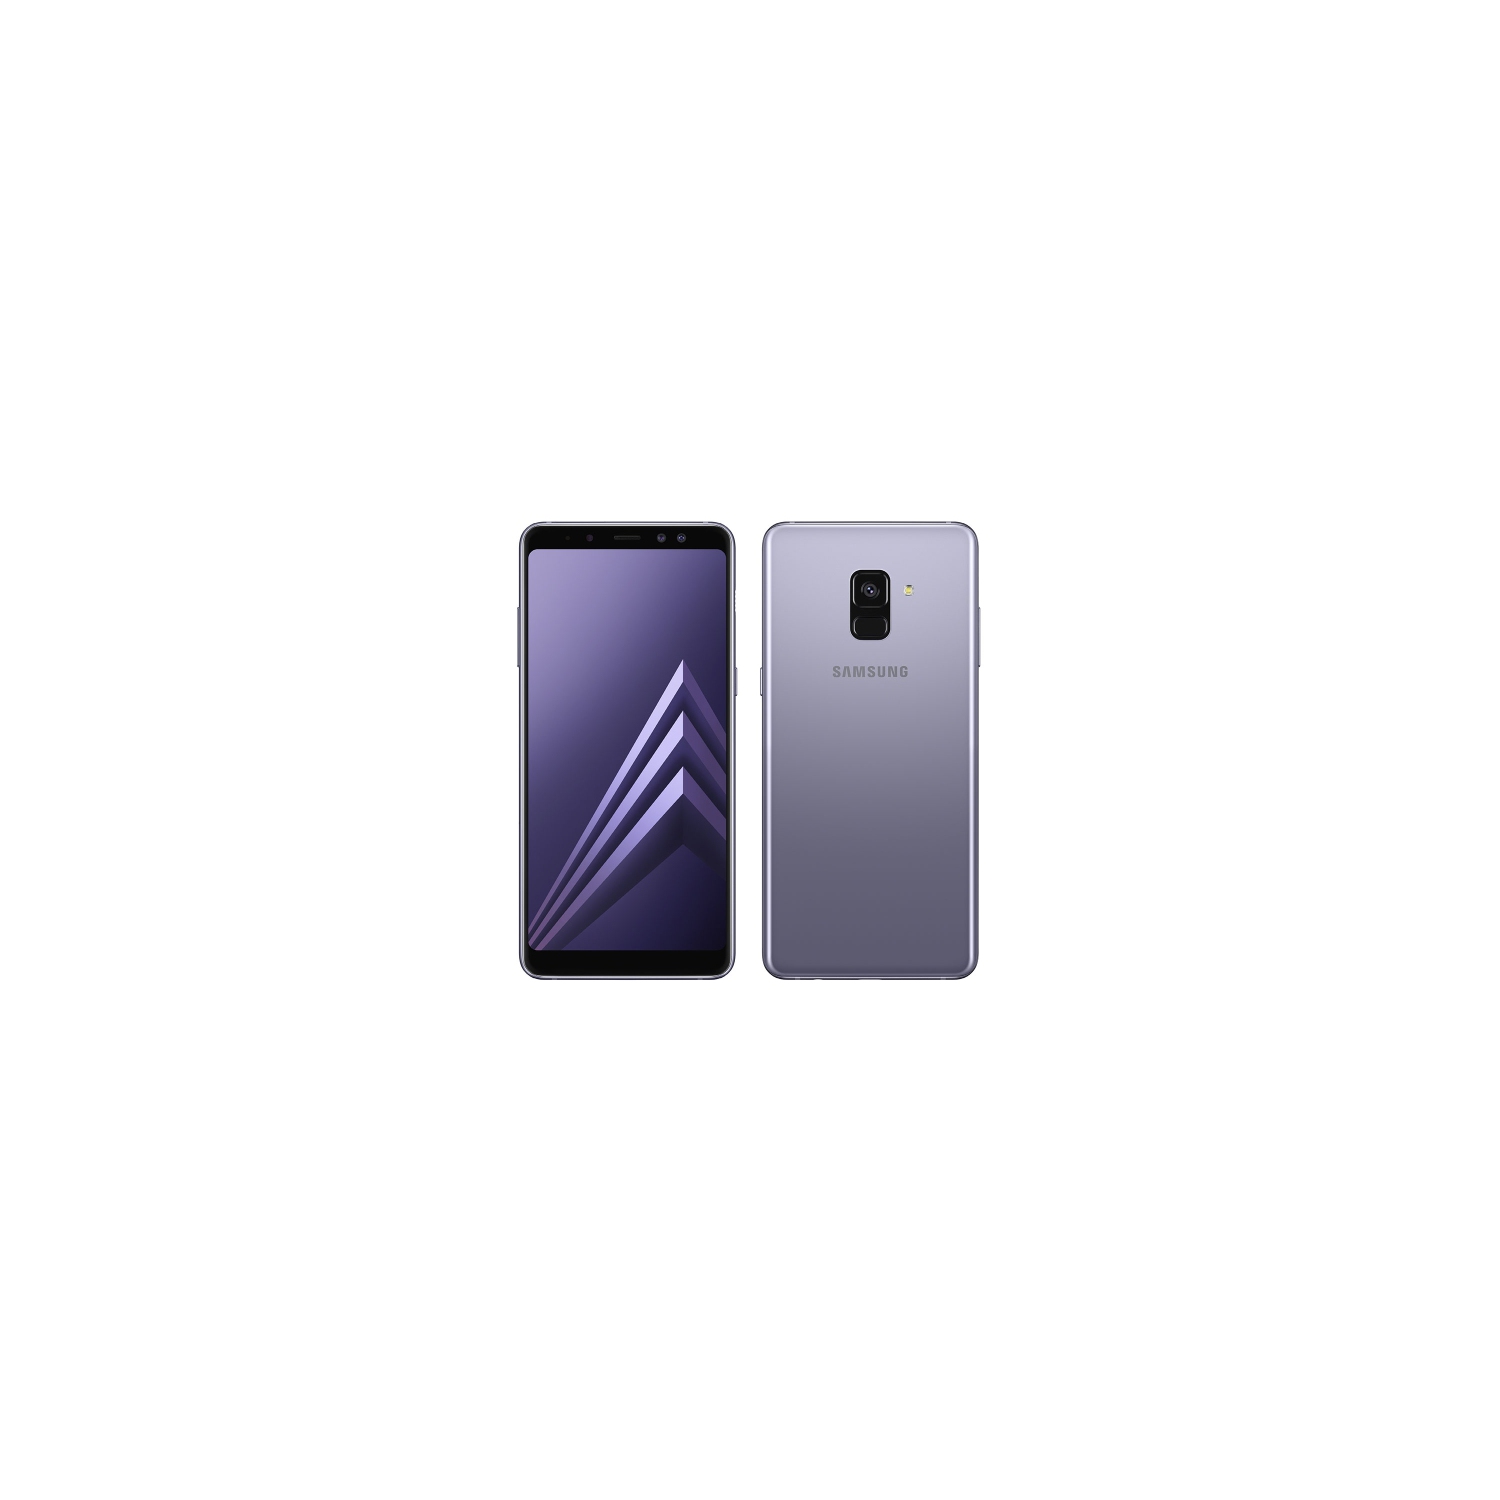 Samsung Galaxy A8 2018 | 32GB – SM- A530W - Canadian Model – Smartphone – Unlocked – Orchard Grey- Open Box